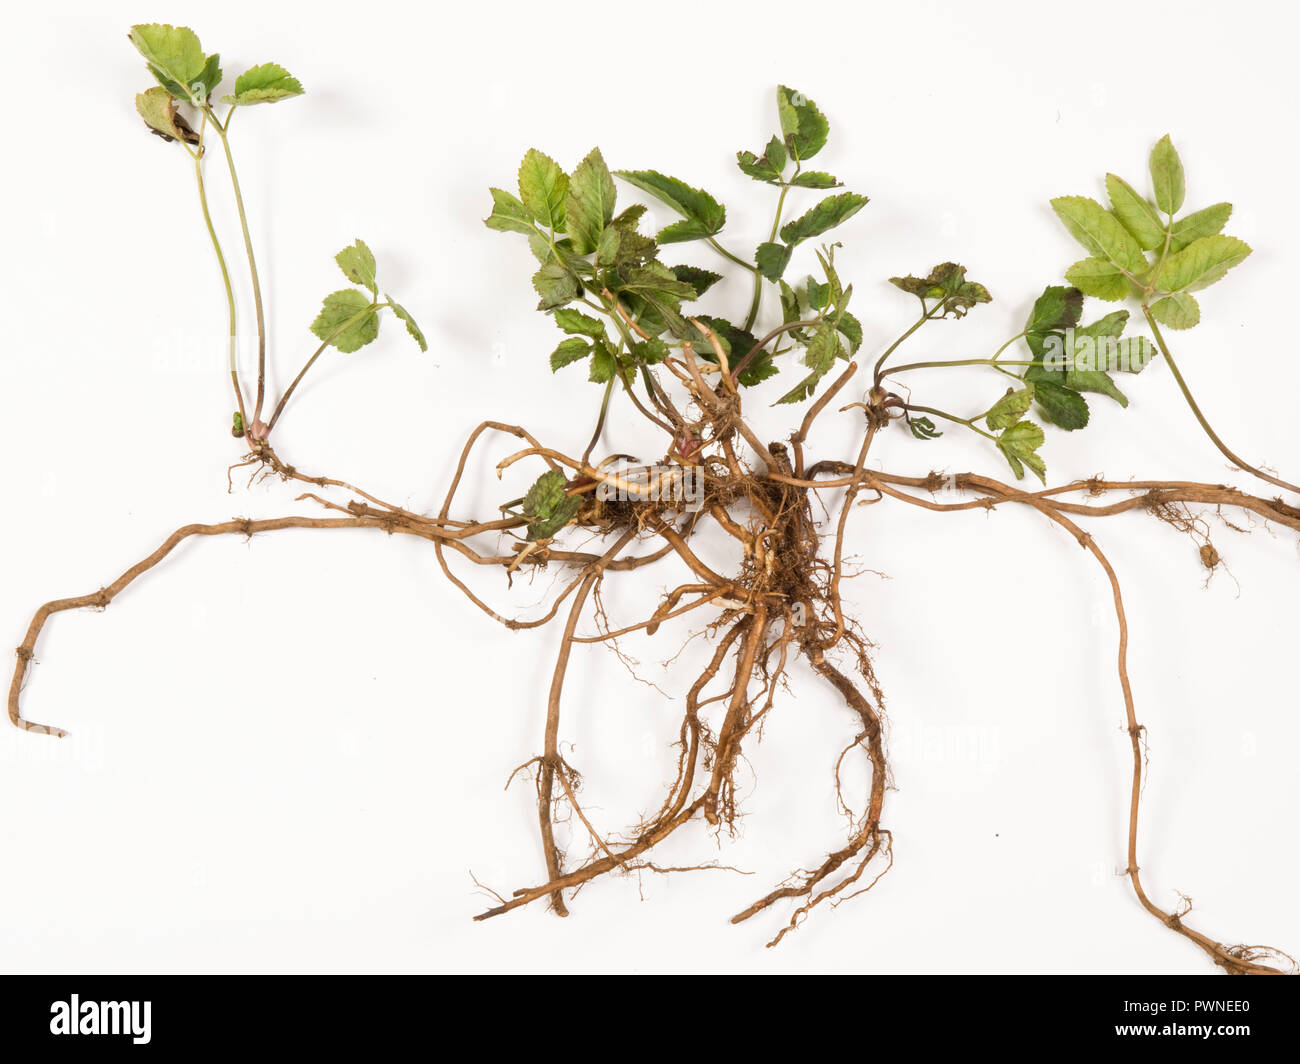 El anciano molido, Aegopodium podagraria, planta a partir de un parche vegetal muestreado para mostrar raíces rizomatosas que se arrastran Foto de stock